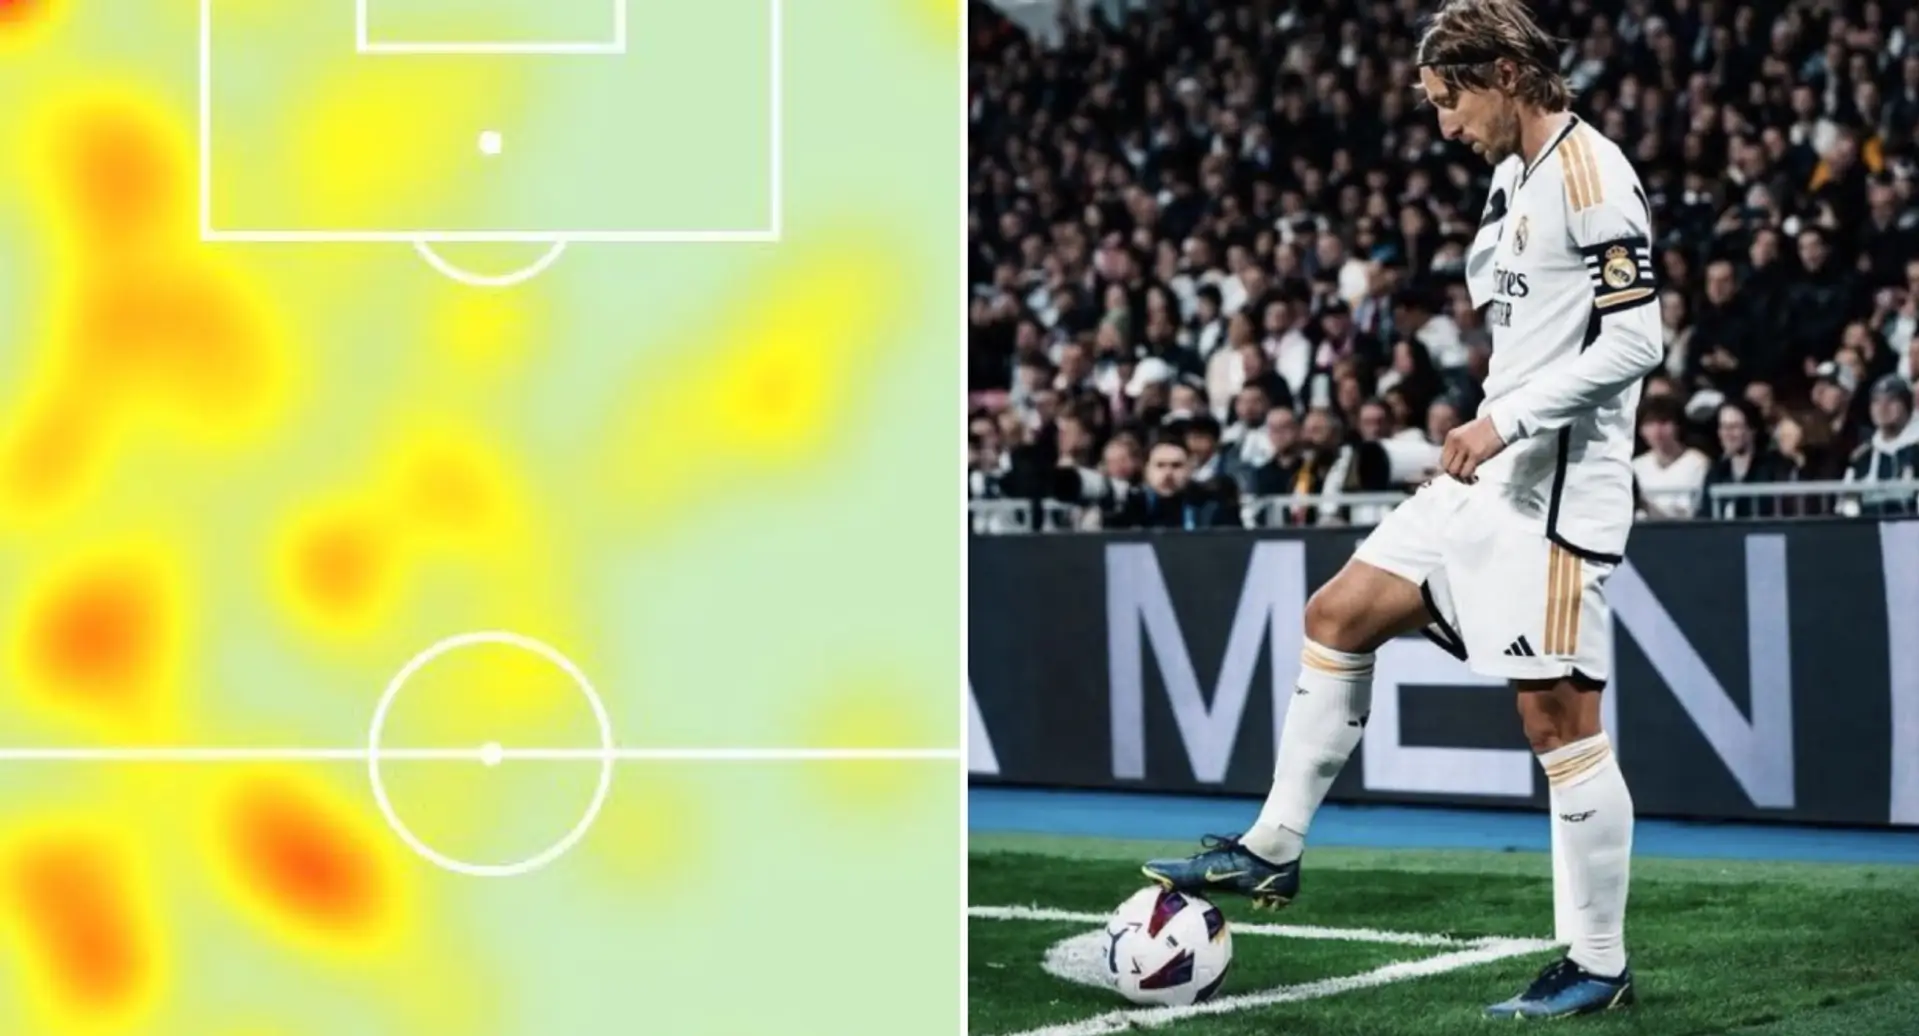 Modric - 10, Rodrygo - 9: Valoración de los jugadores del Real Madrid en la goleada vs Villarreal